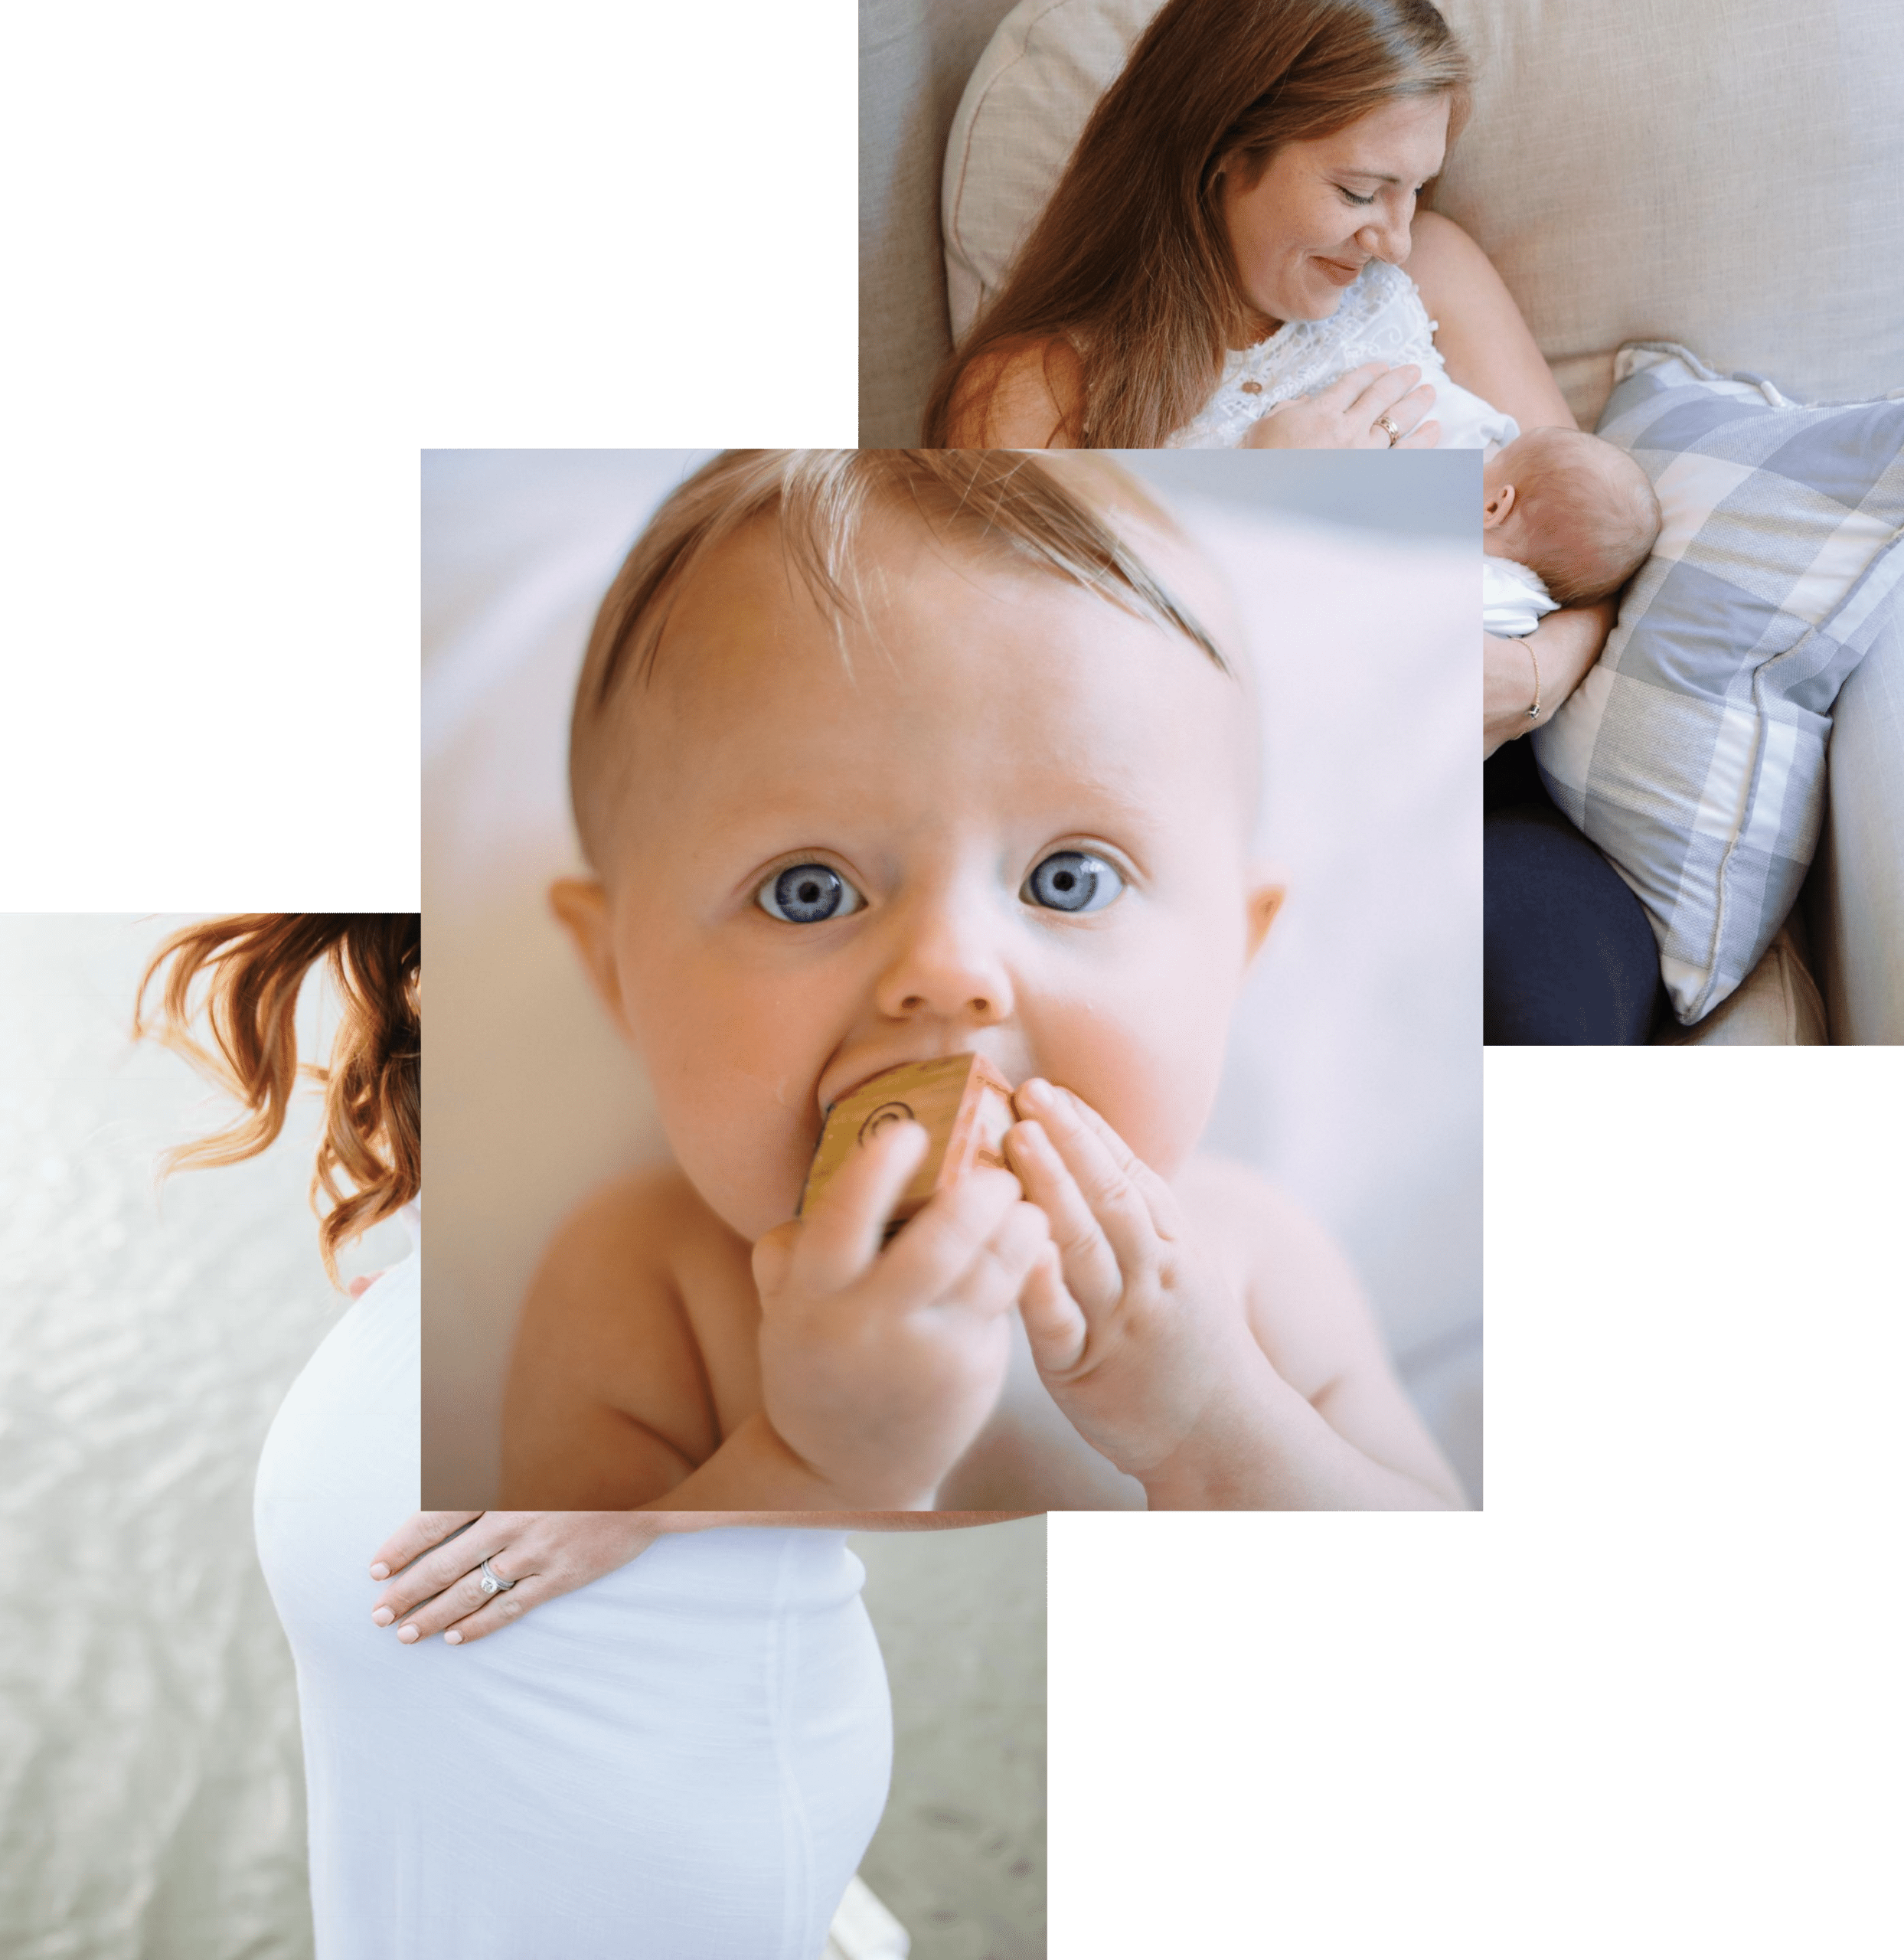 Baby Settler Courses Launch September 2020